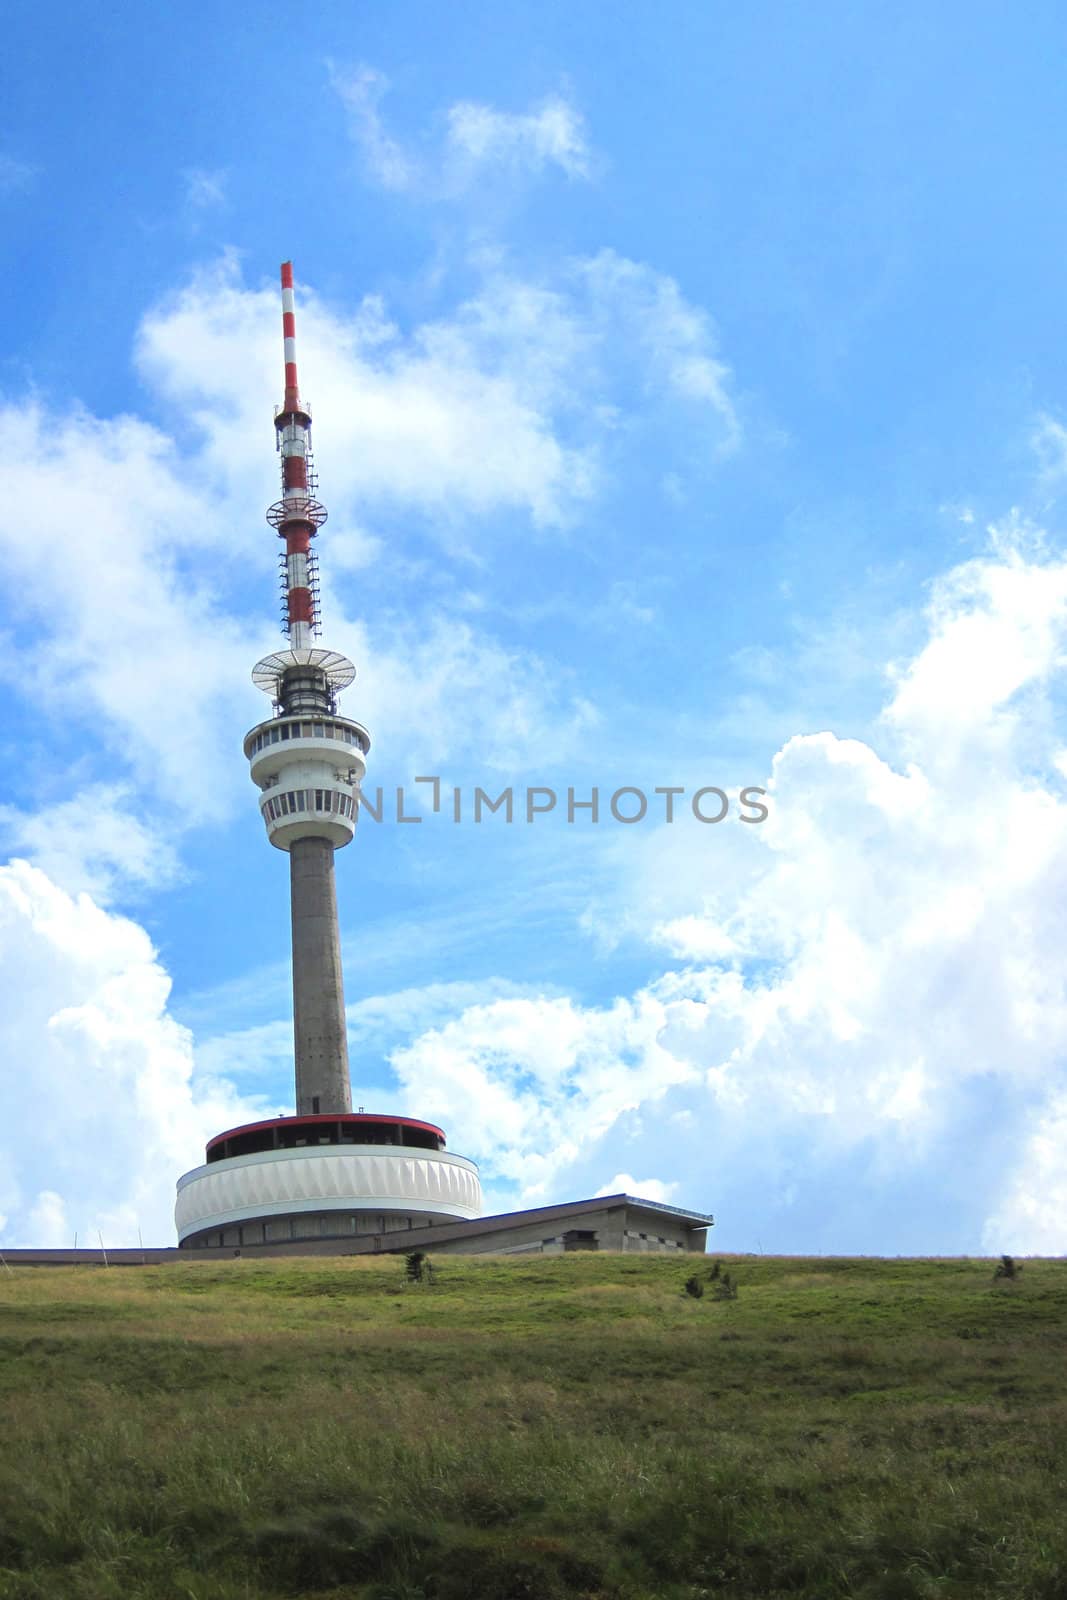 Praded tower in Jeseniky mountains in Czech republic by jonnysek